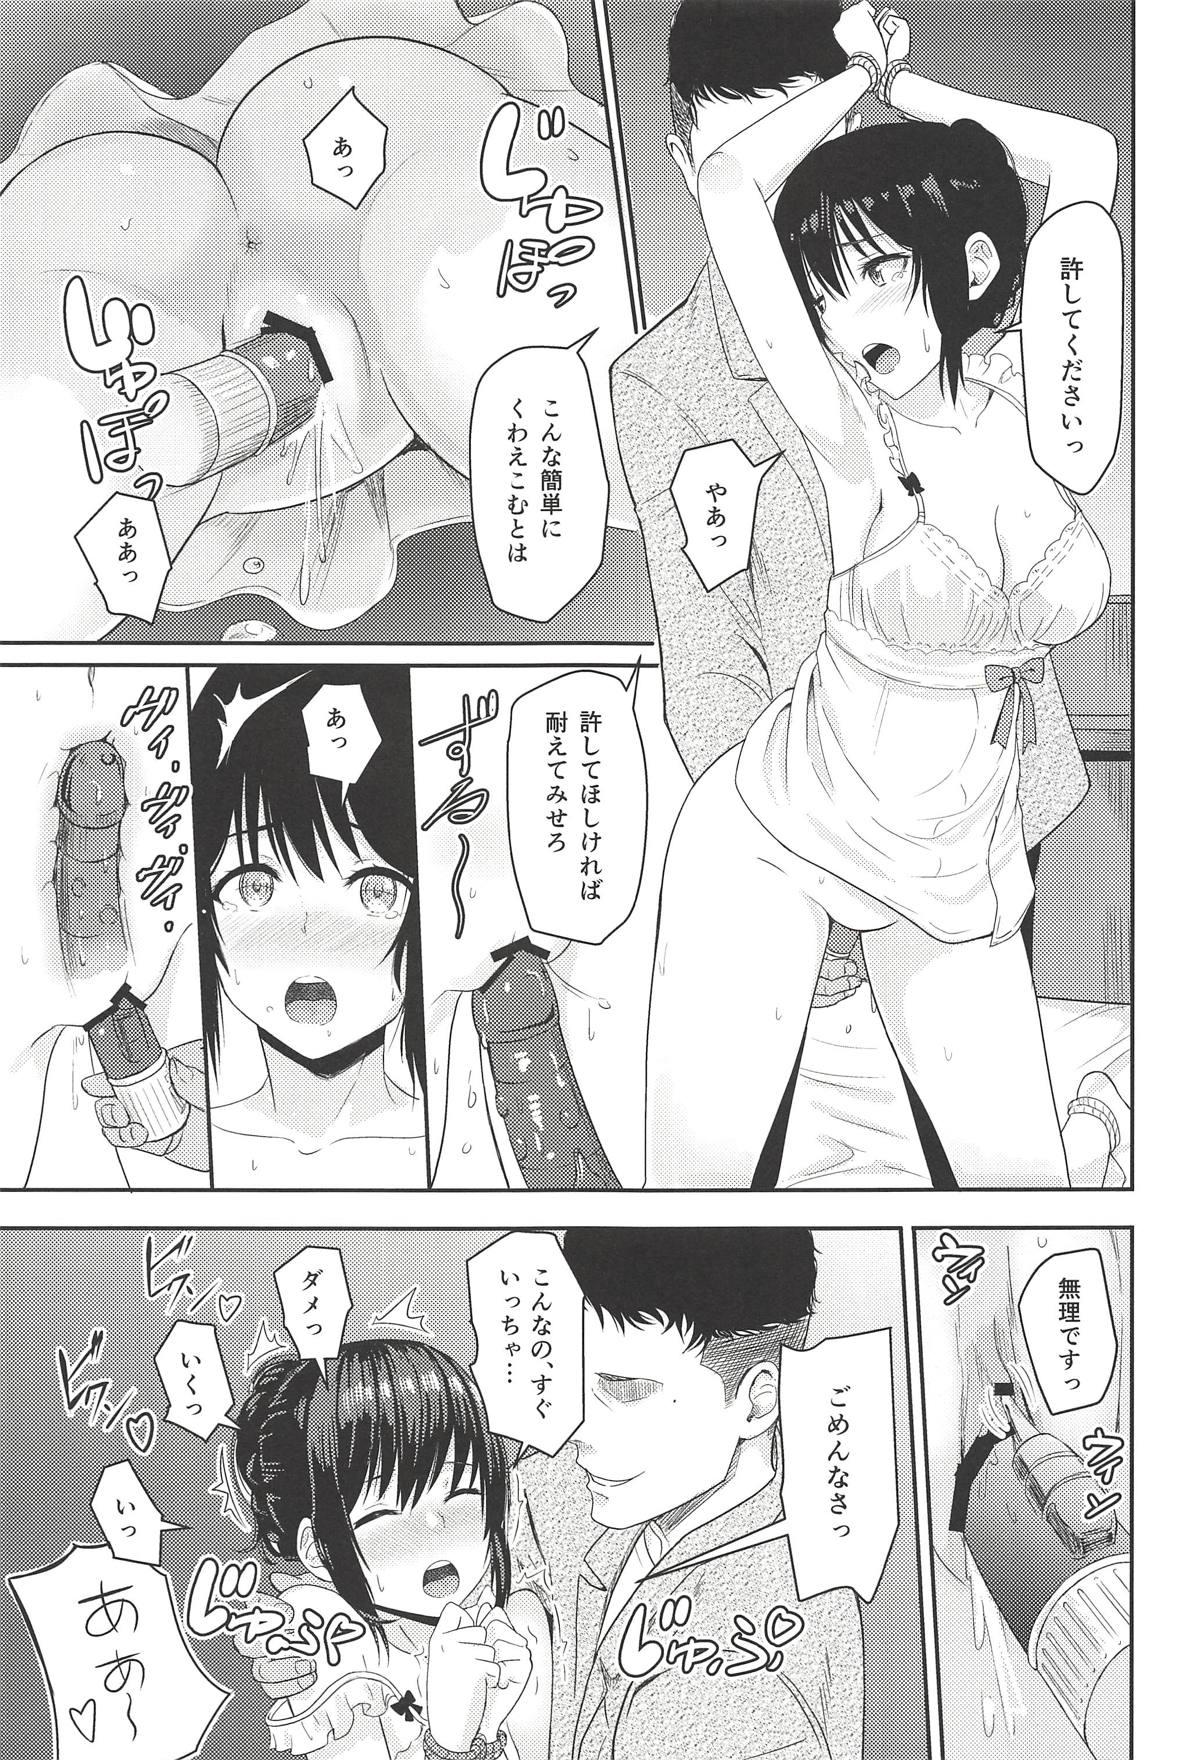 Groping Mitsuha - Kimi no na wa. Putita - Page 14